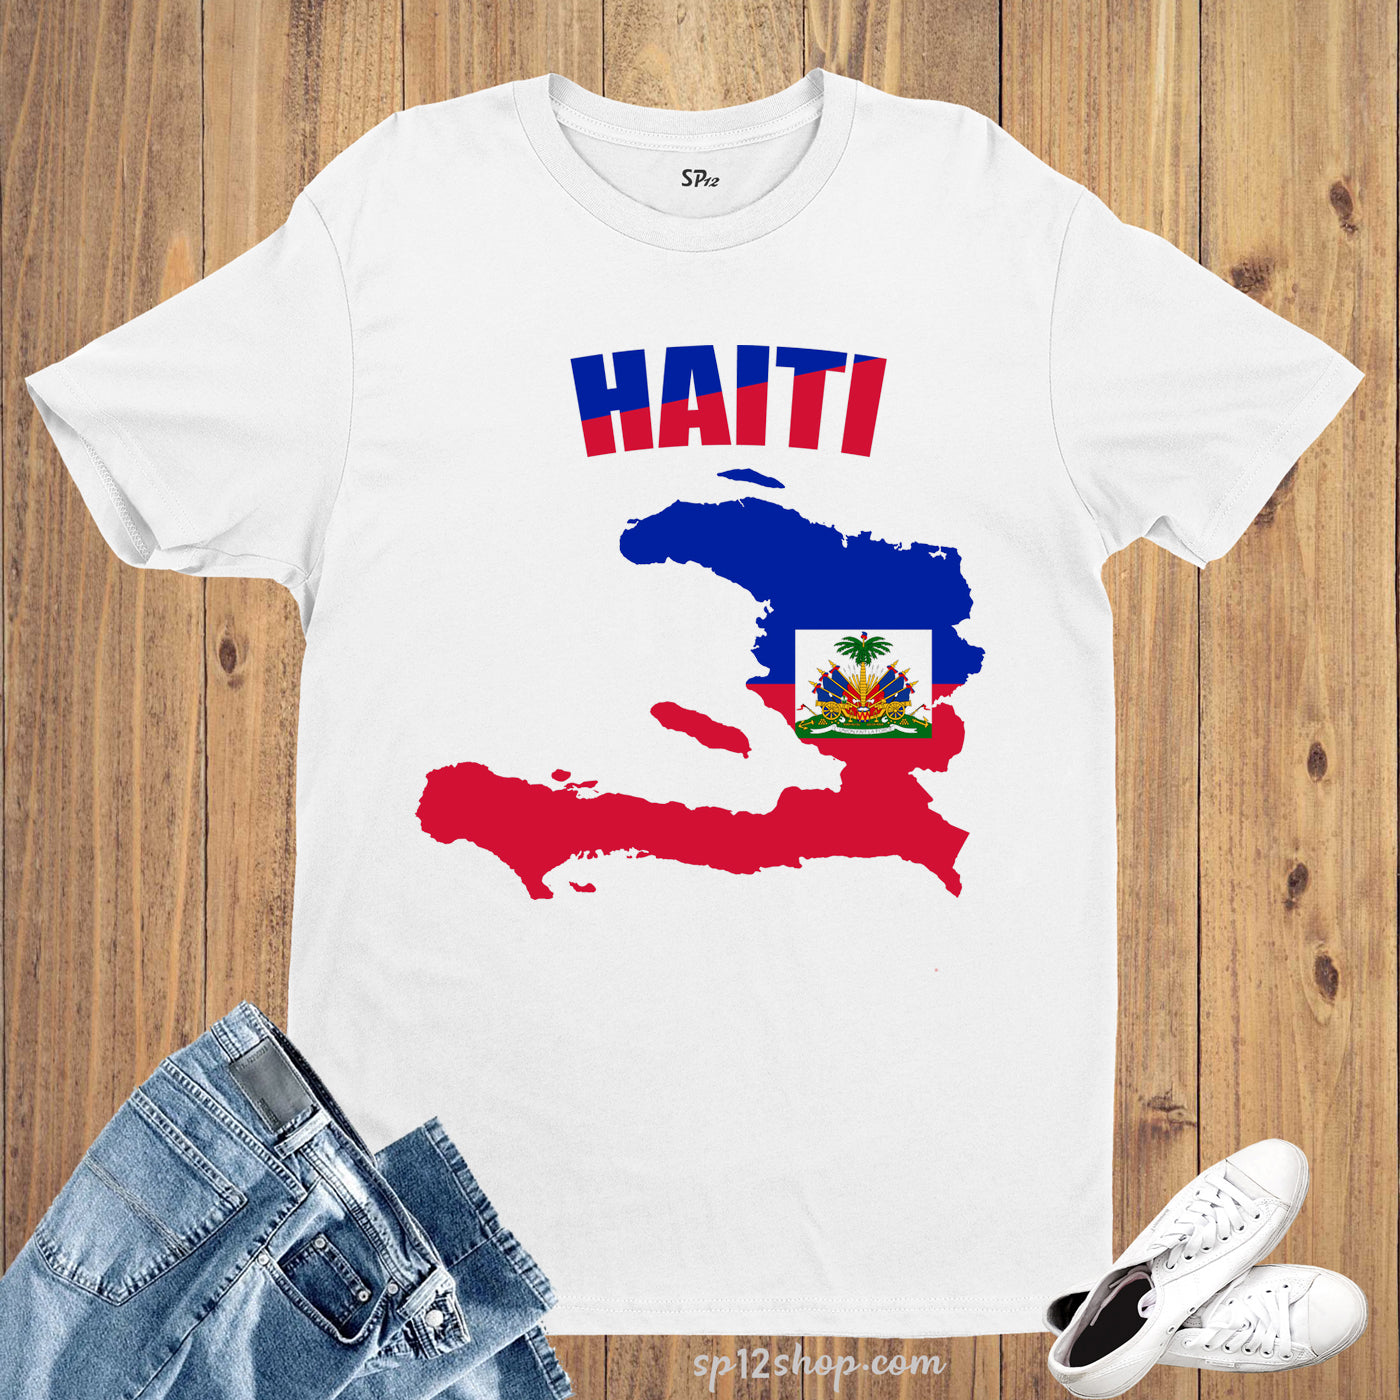 Haiti Flag T Shirt Olympics FIFA World Cup Country Flag Tee Shirt